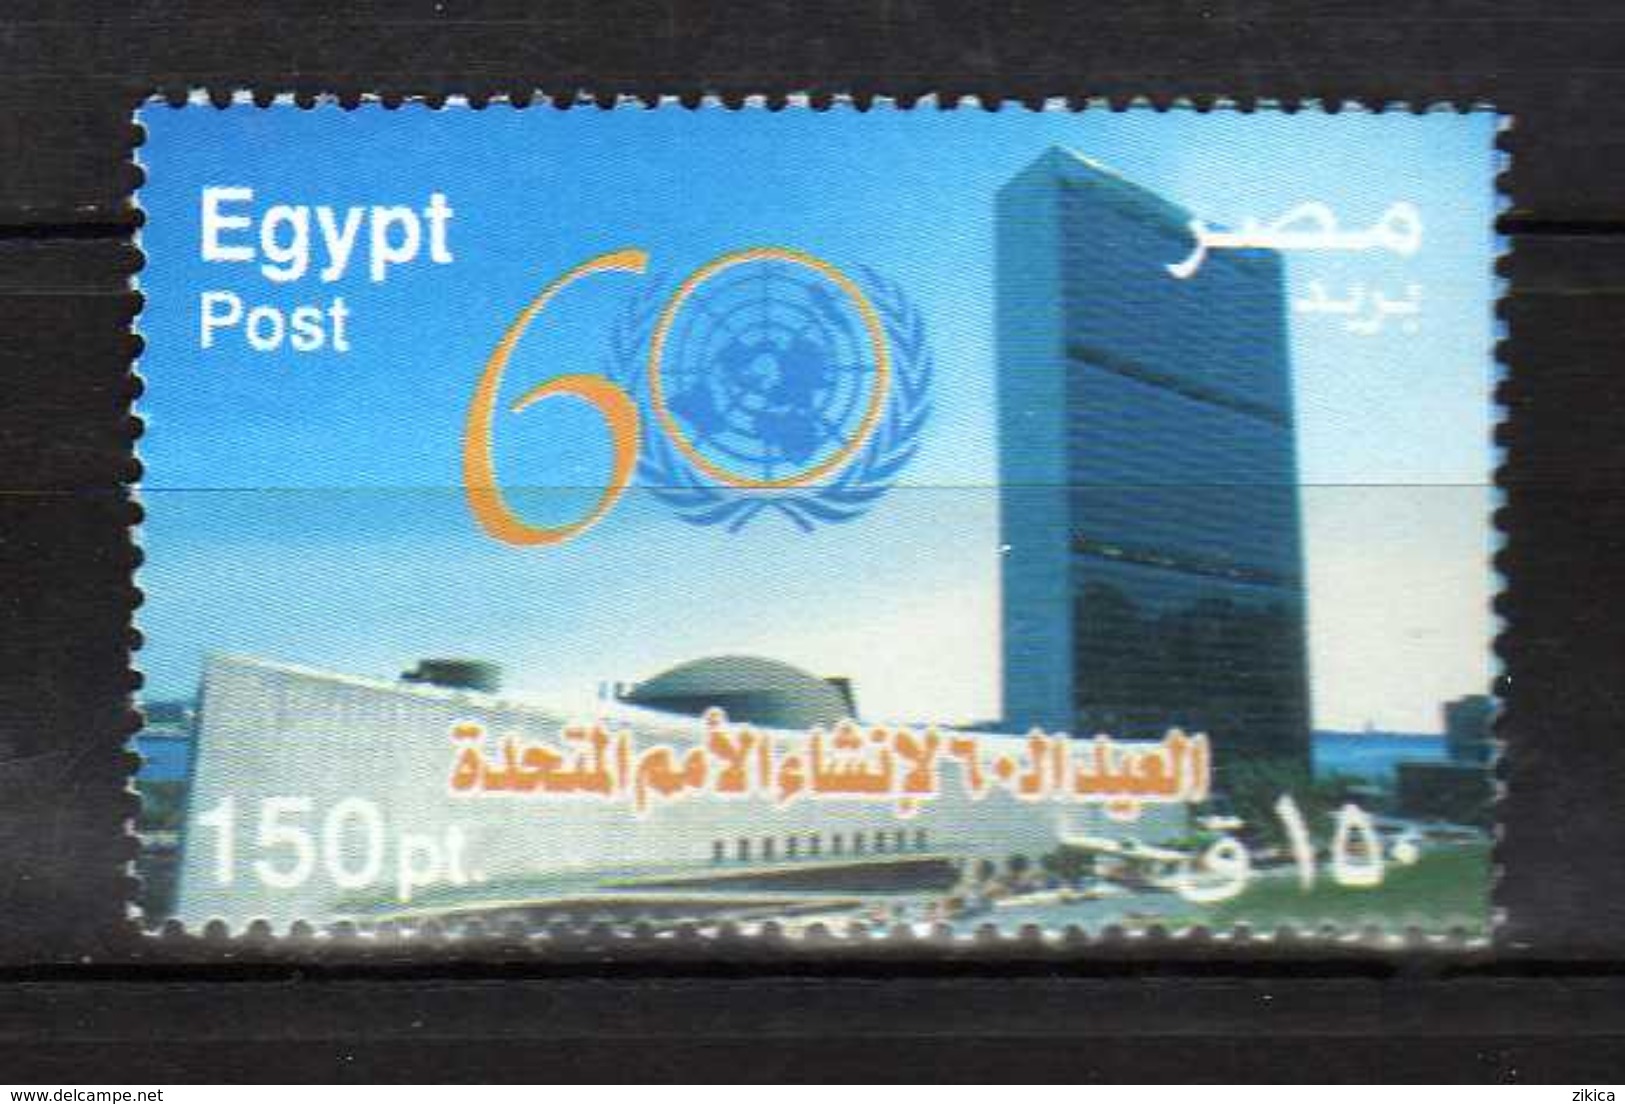 Egypt 2005 The 60th Anniversary Of United Nations. MNH - Ongebruikt